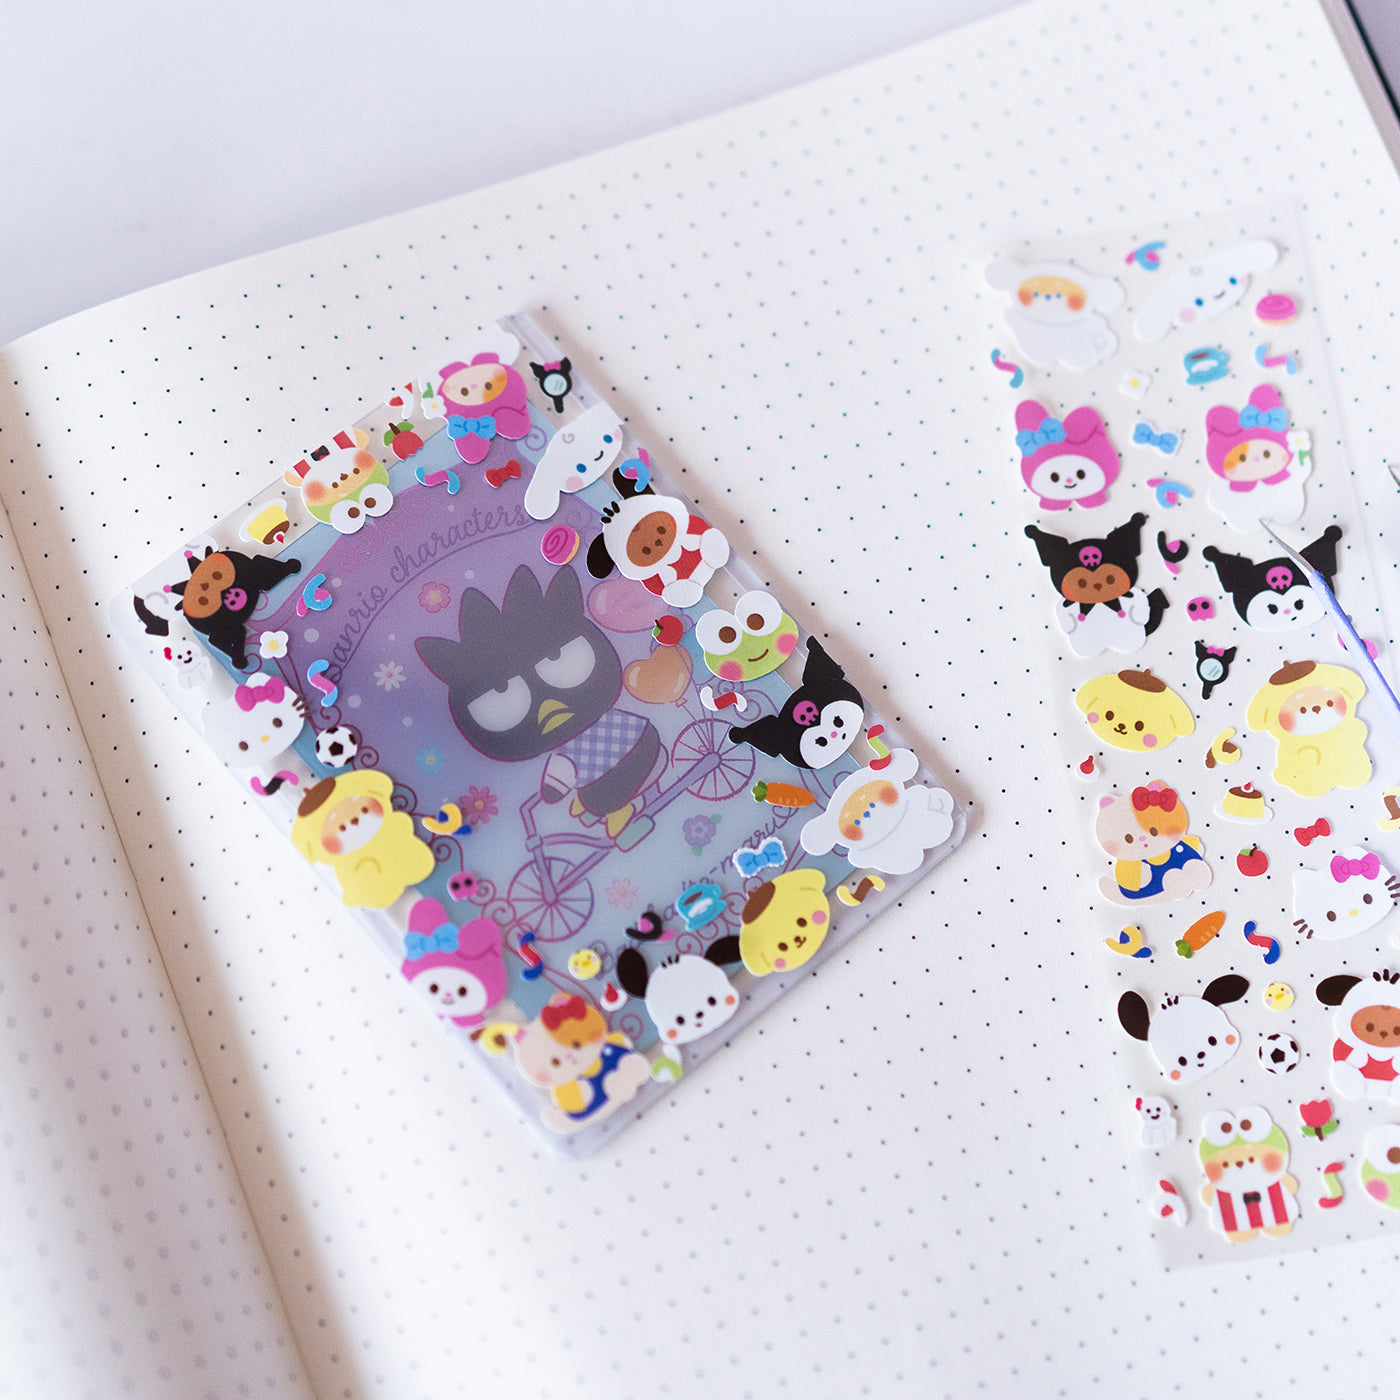 Sanrio Characters and Minty Friends Fan Art Journal Sticker Sheet